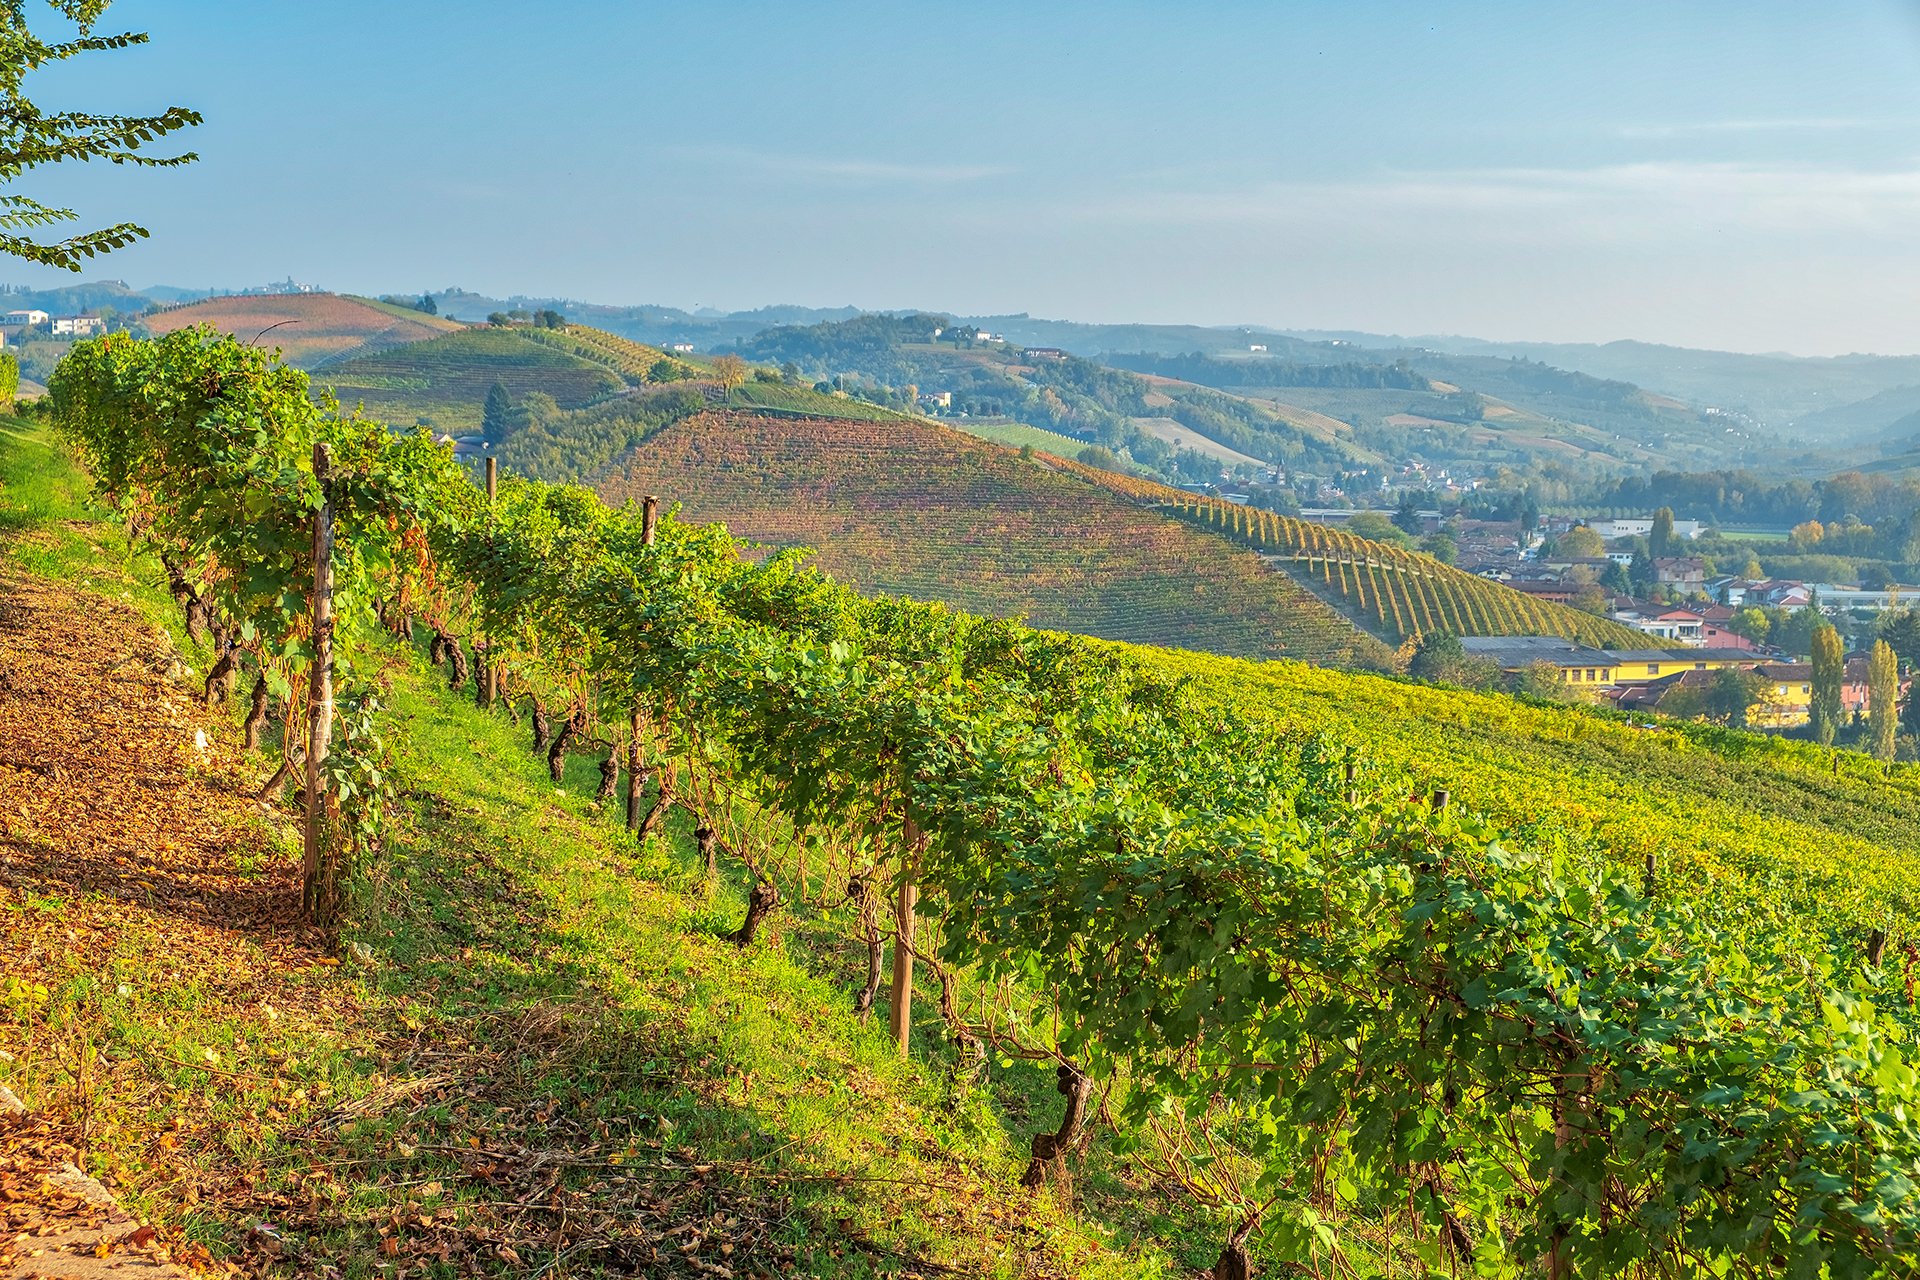 Vinery region of Piemonte, Northern Italy.